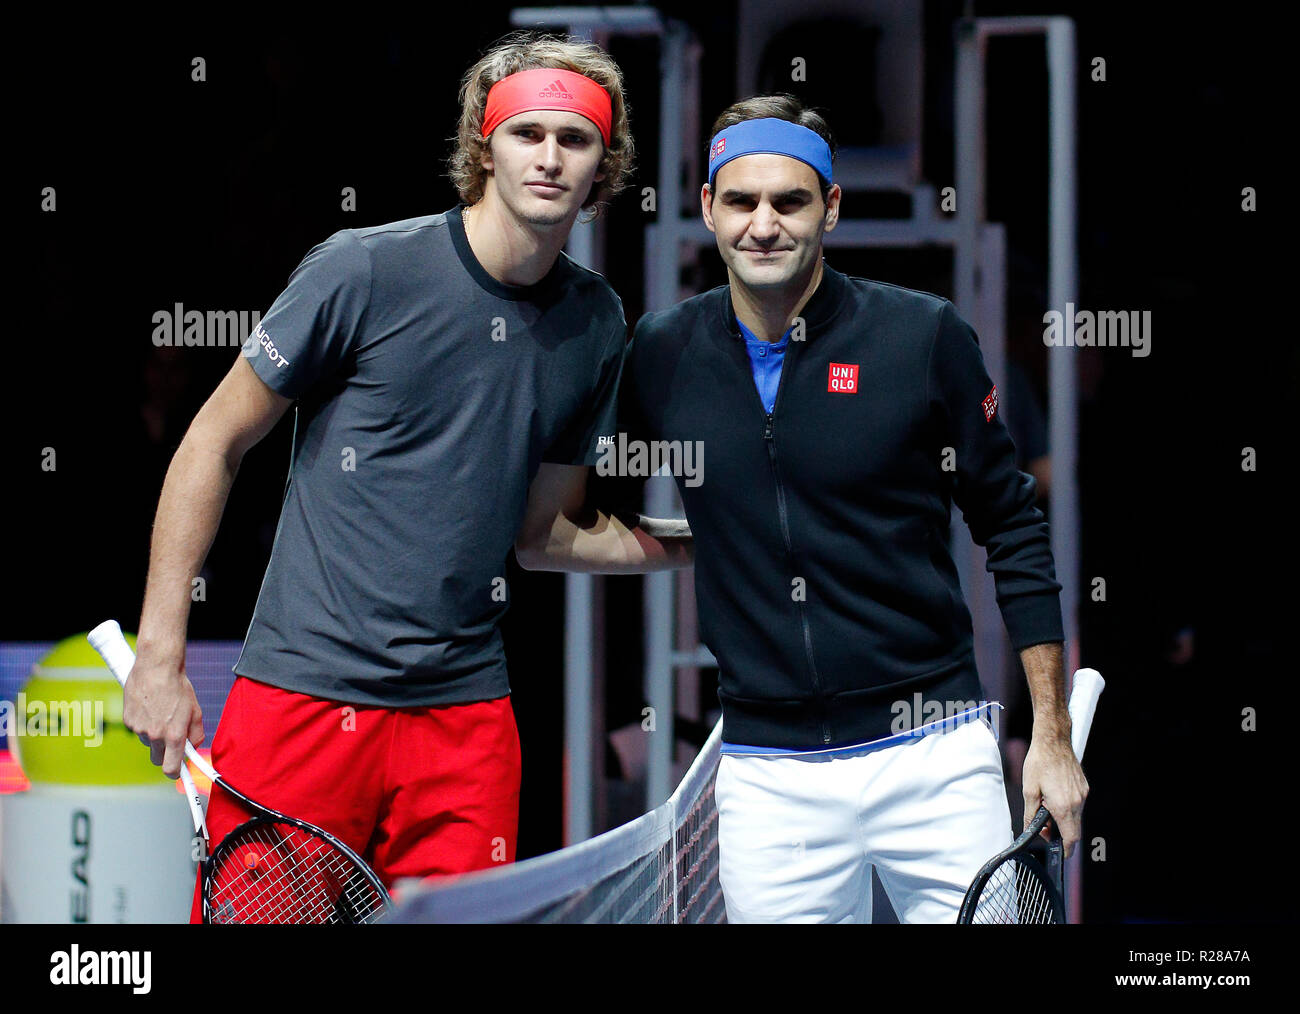 17 novembre 2018, O2 Arena, London, England ; Nitto ATP Tennis finale ; Alexander Zverev (GER) et Roger Federer (SUI) posent pour des photos ensemble avant leur demi-finale Banque D'Images